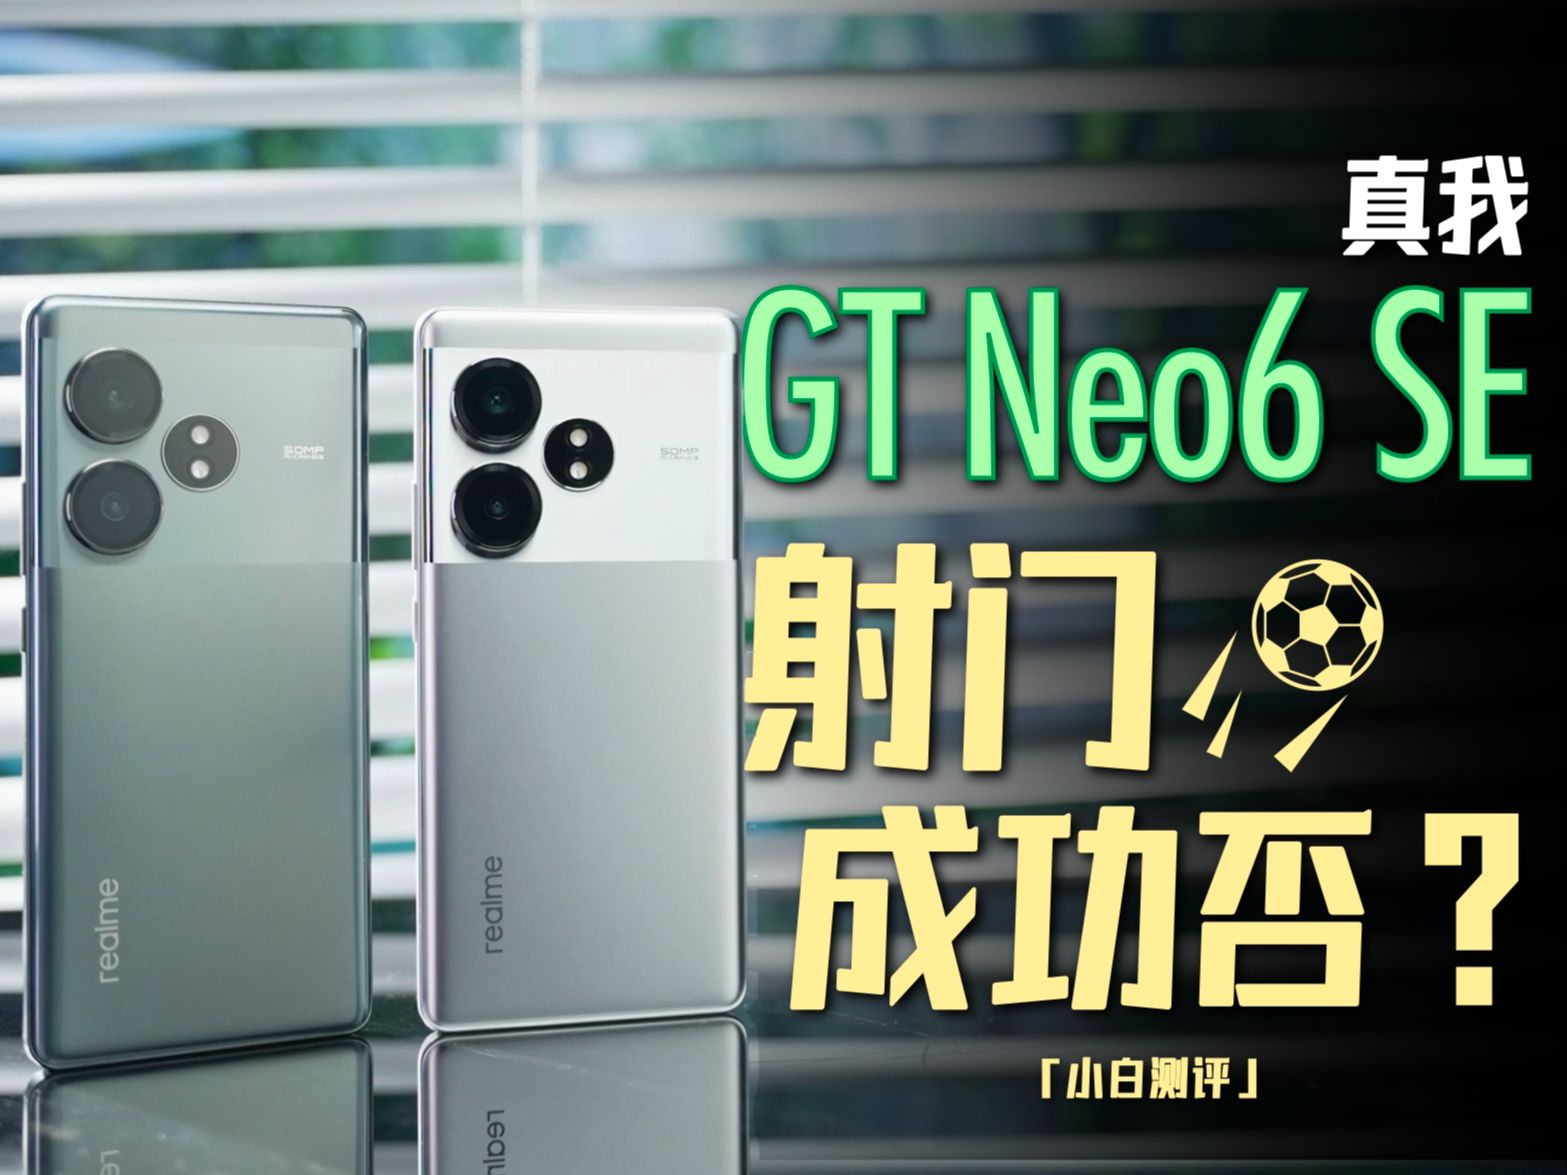 「小白」真我GT Neo6 SE测评：银色可太帅了！